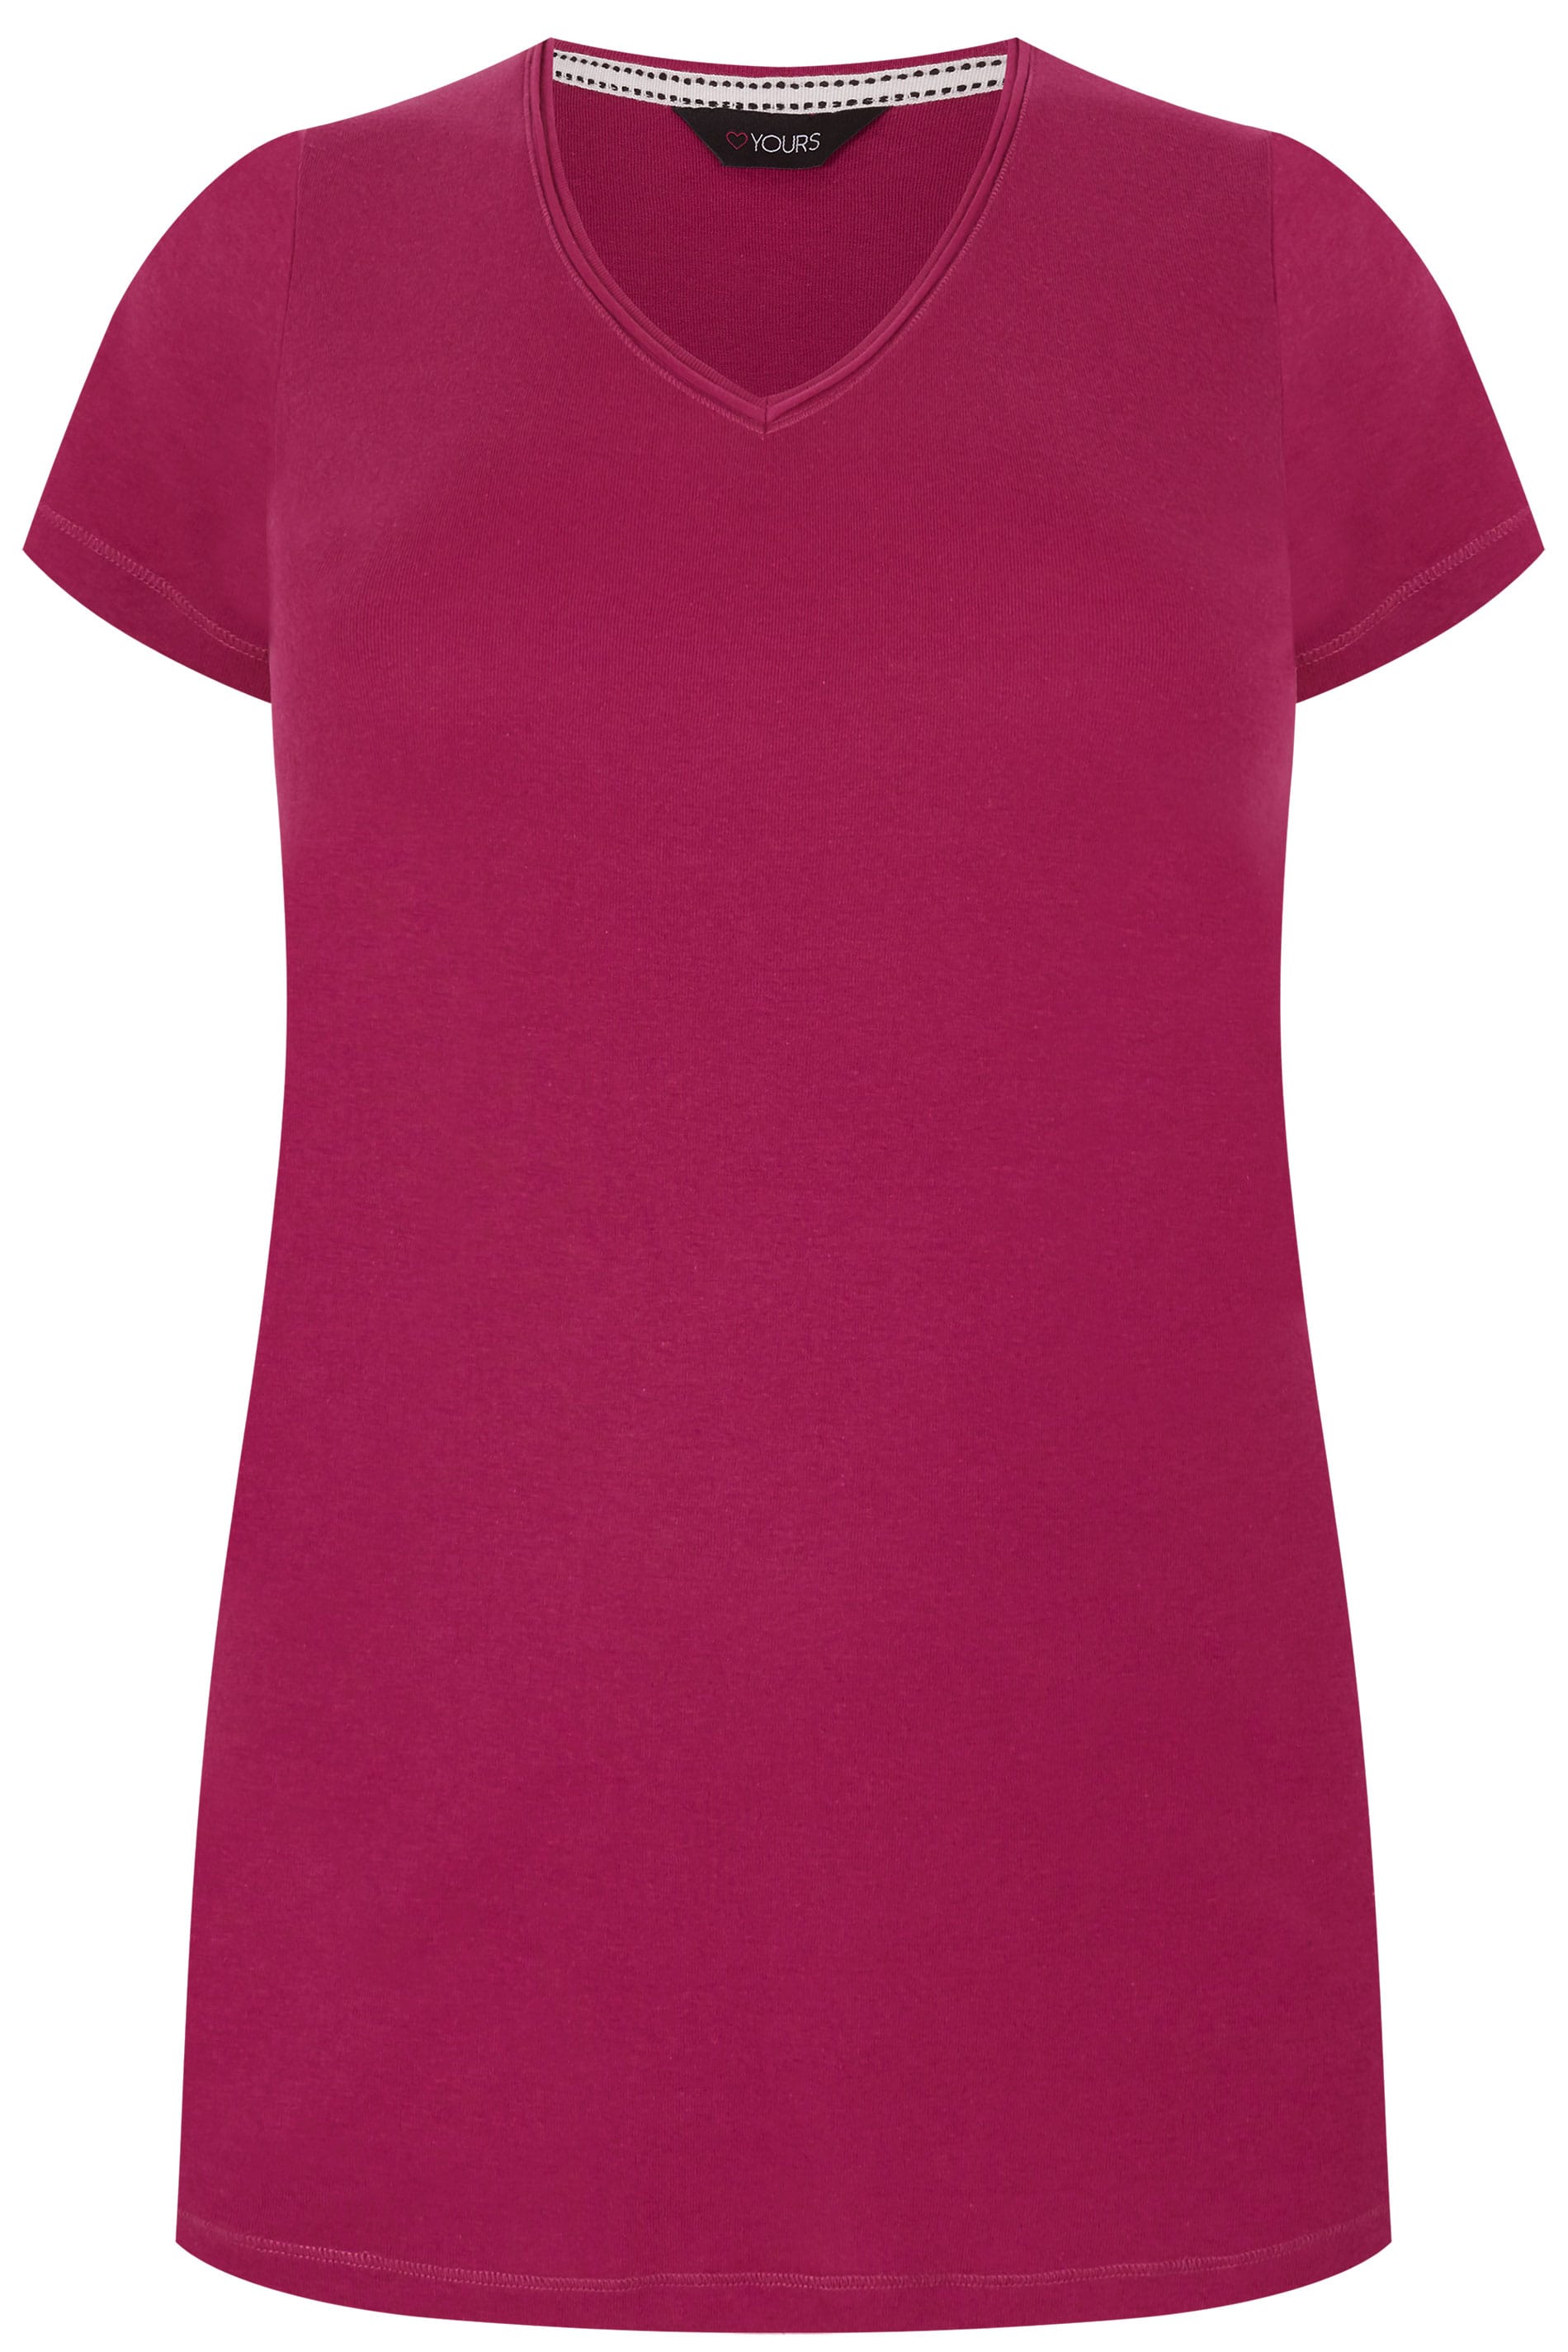 Fuchsia Pink Basic V Neck T Shirt Plus Size 16 To 36